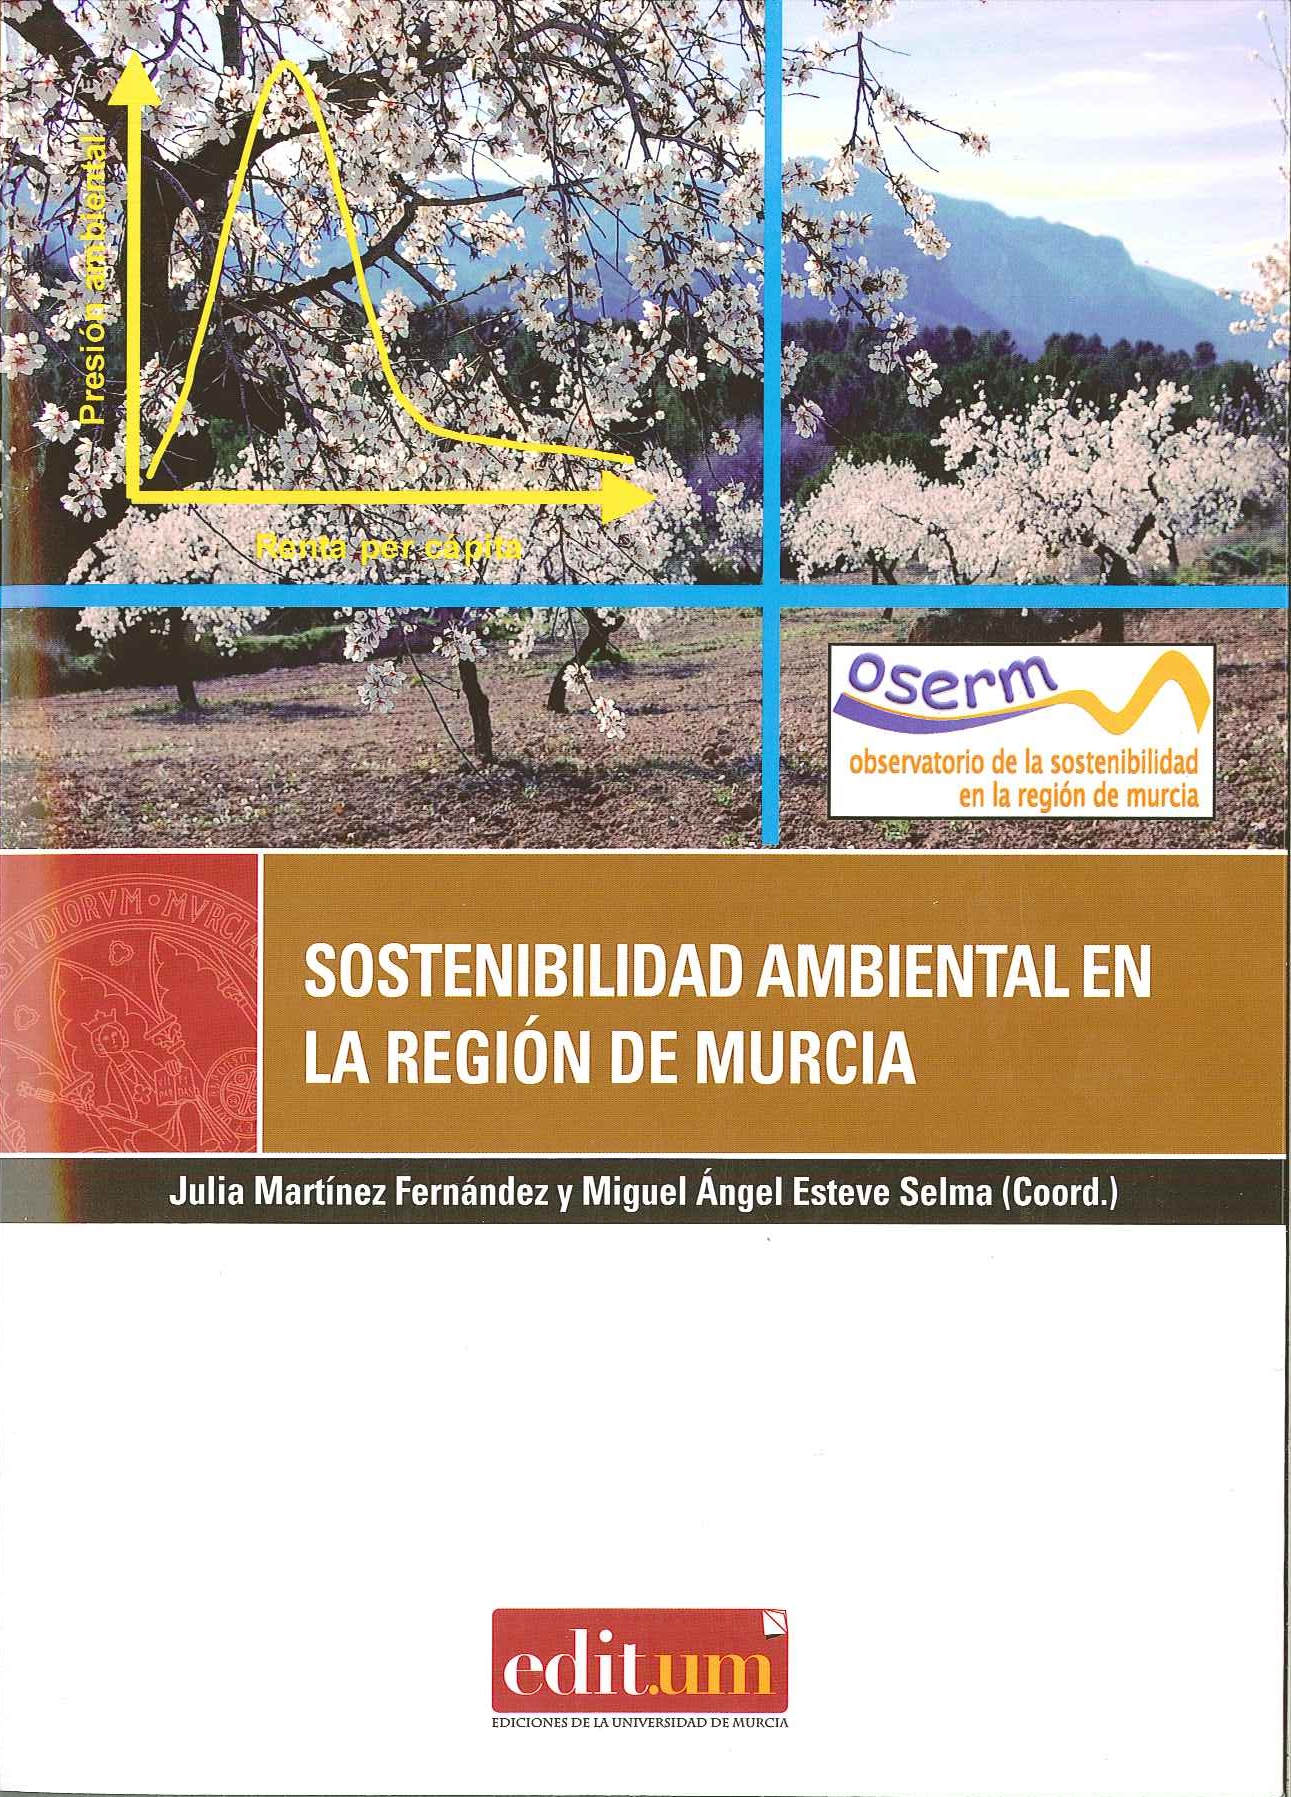 Sostenibilidad Ambiental en la Región de Murcia OSERM